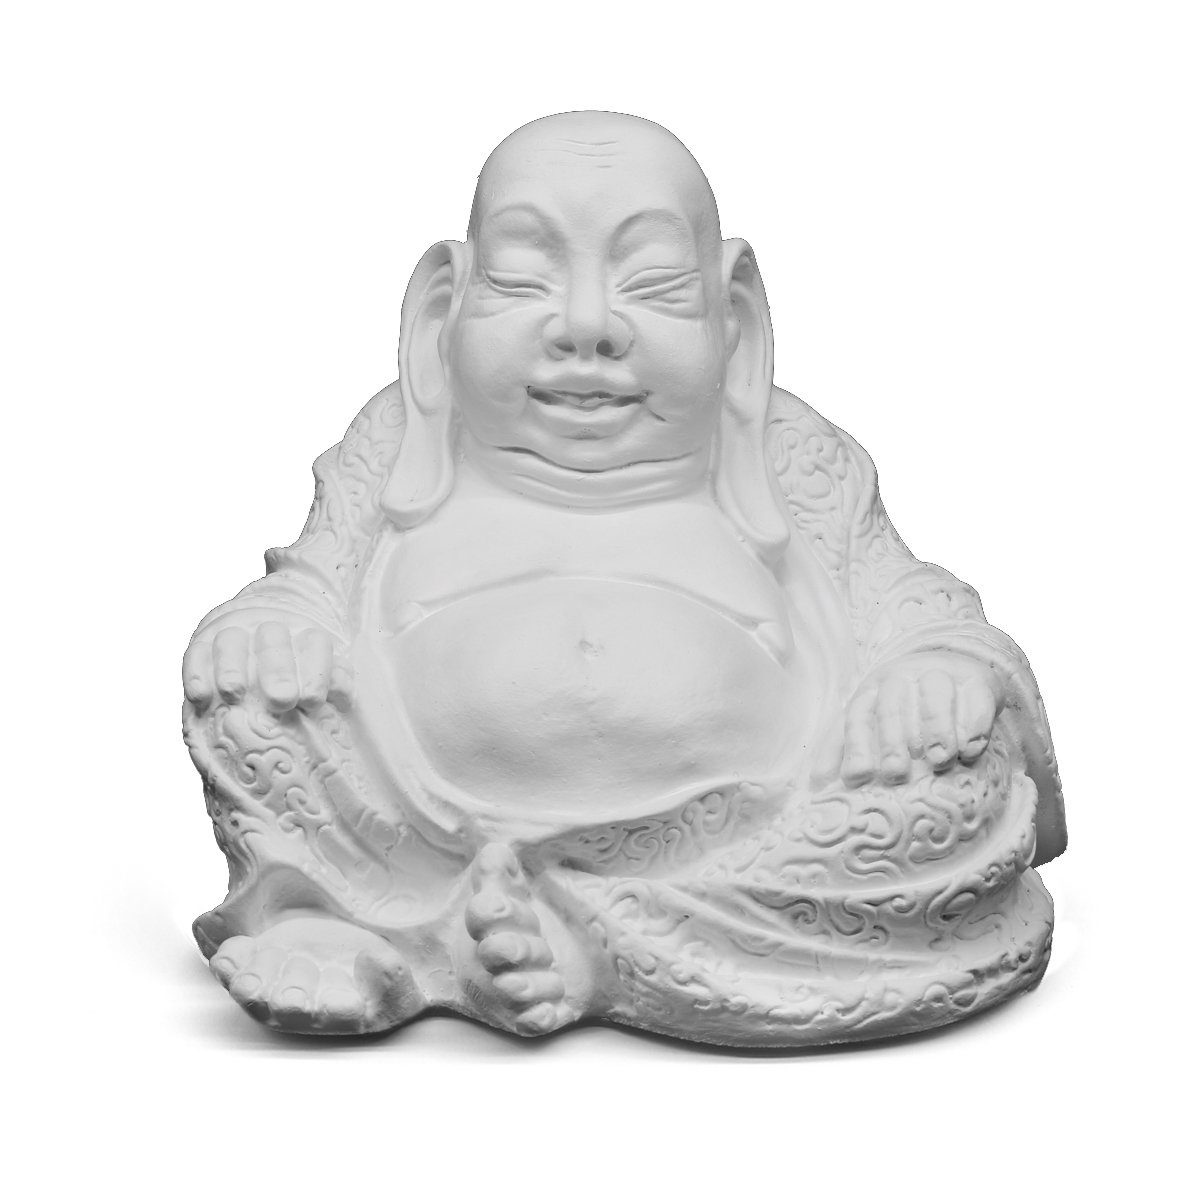 Tiefes Kunsthandwerk Buddhafigur Buddha Dekofigur Stein sitzend - Statue, frostsicher, winterfest, Made in Germany weiß